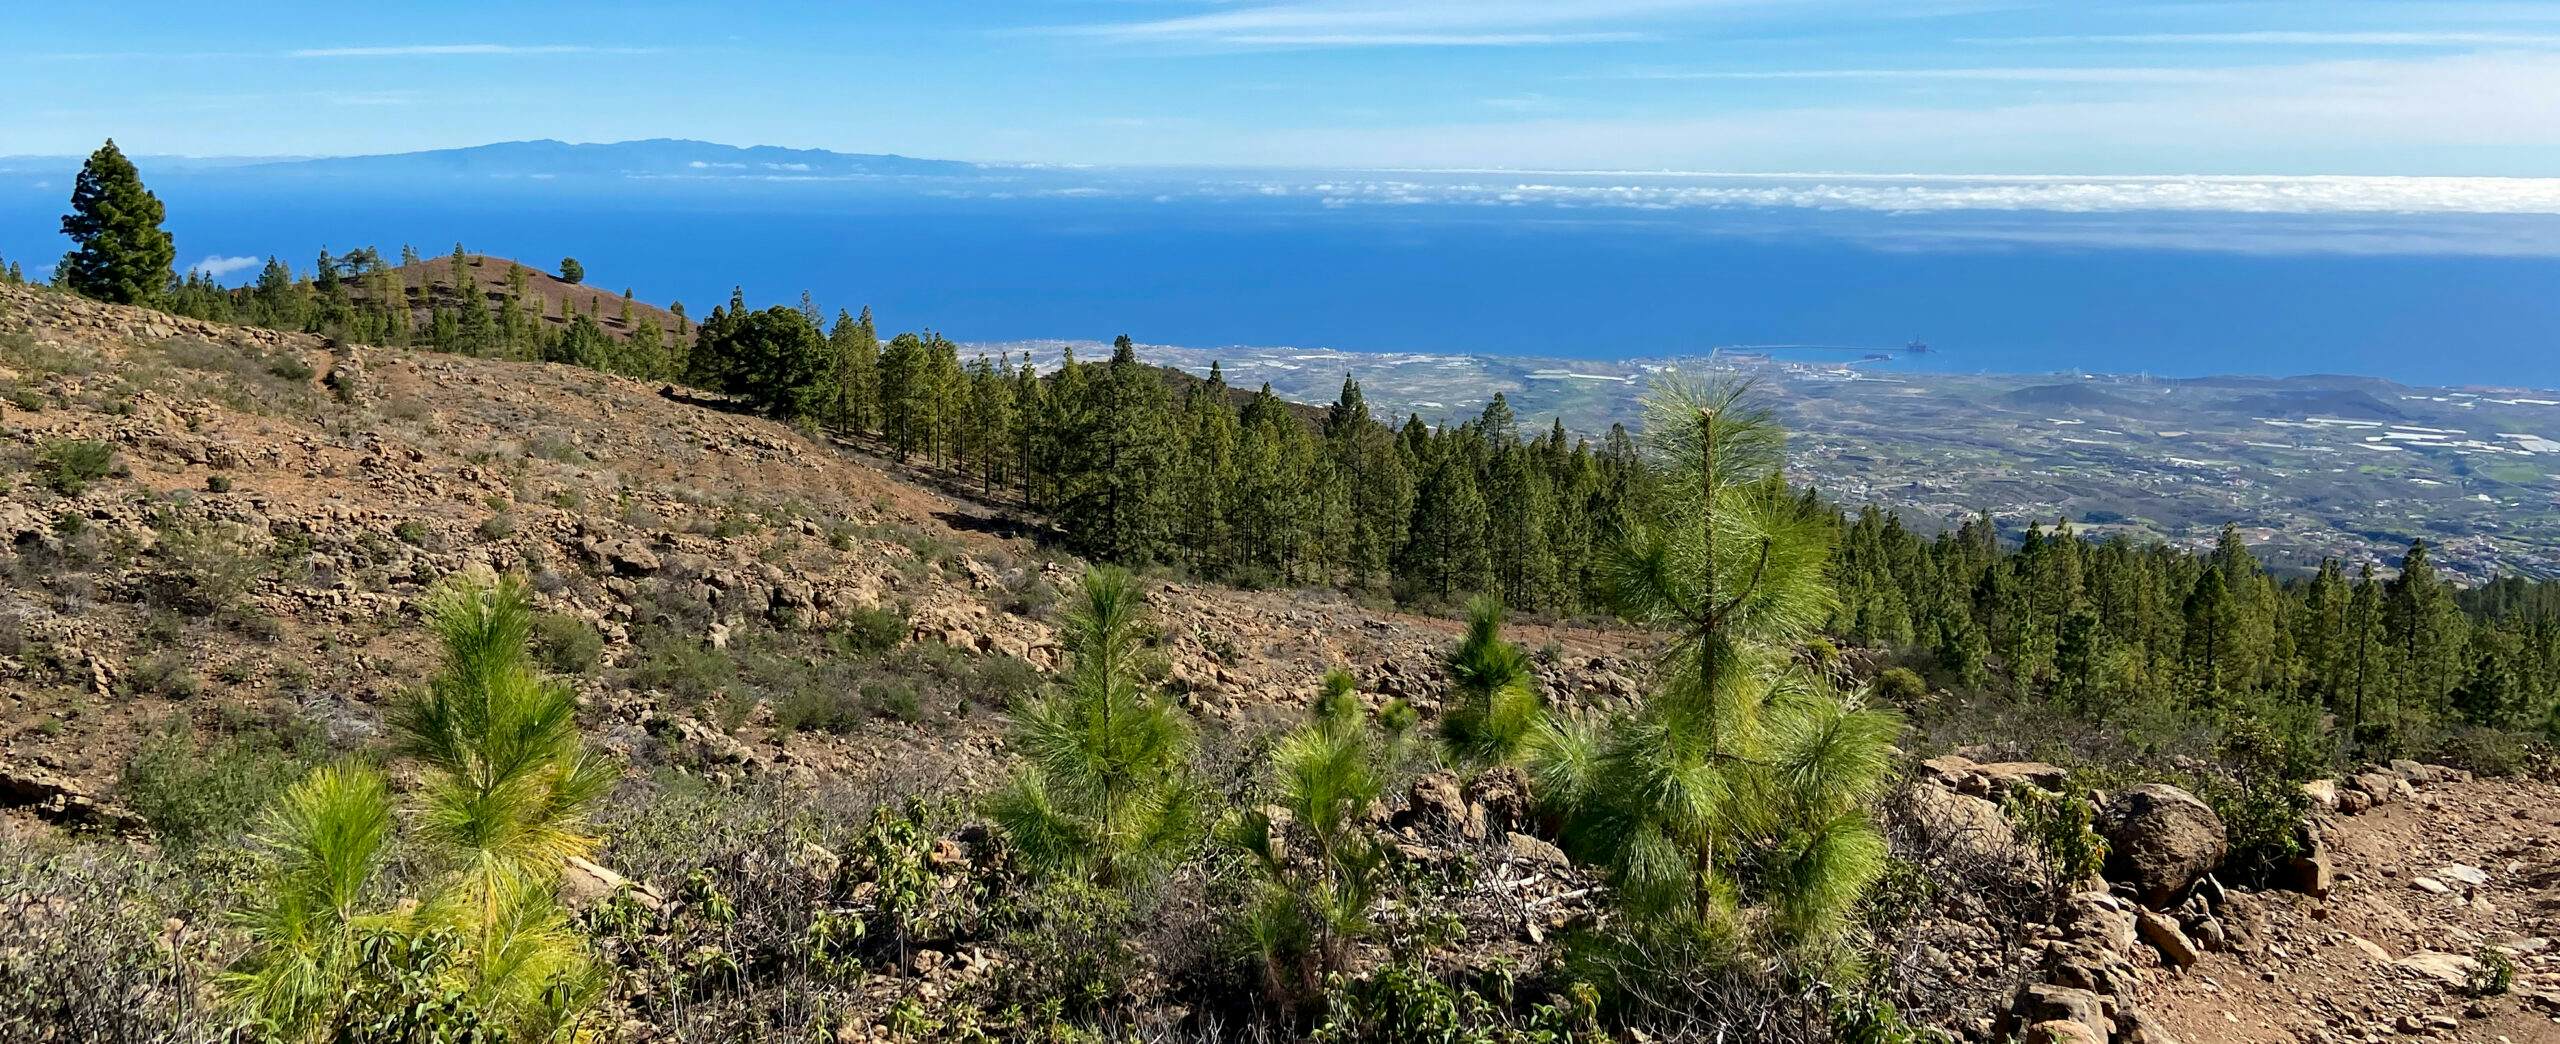 Vista de Gran Canaria desde arriba